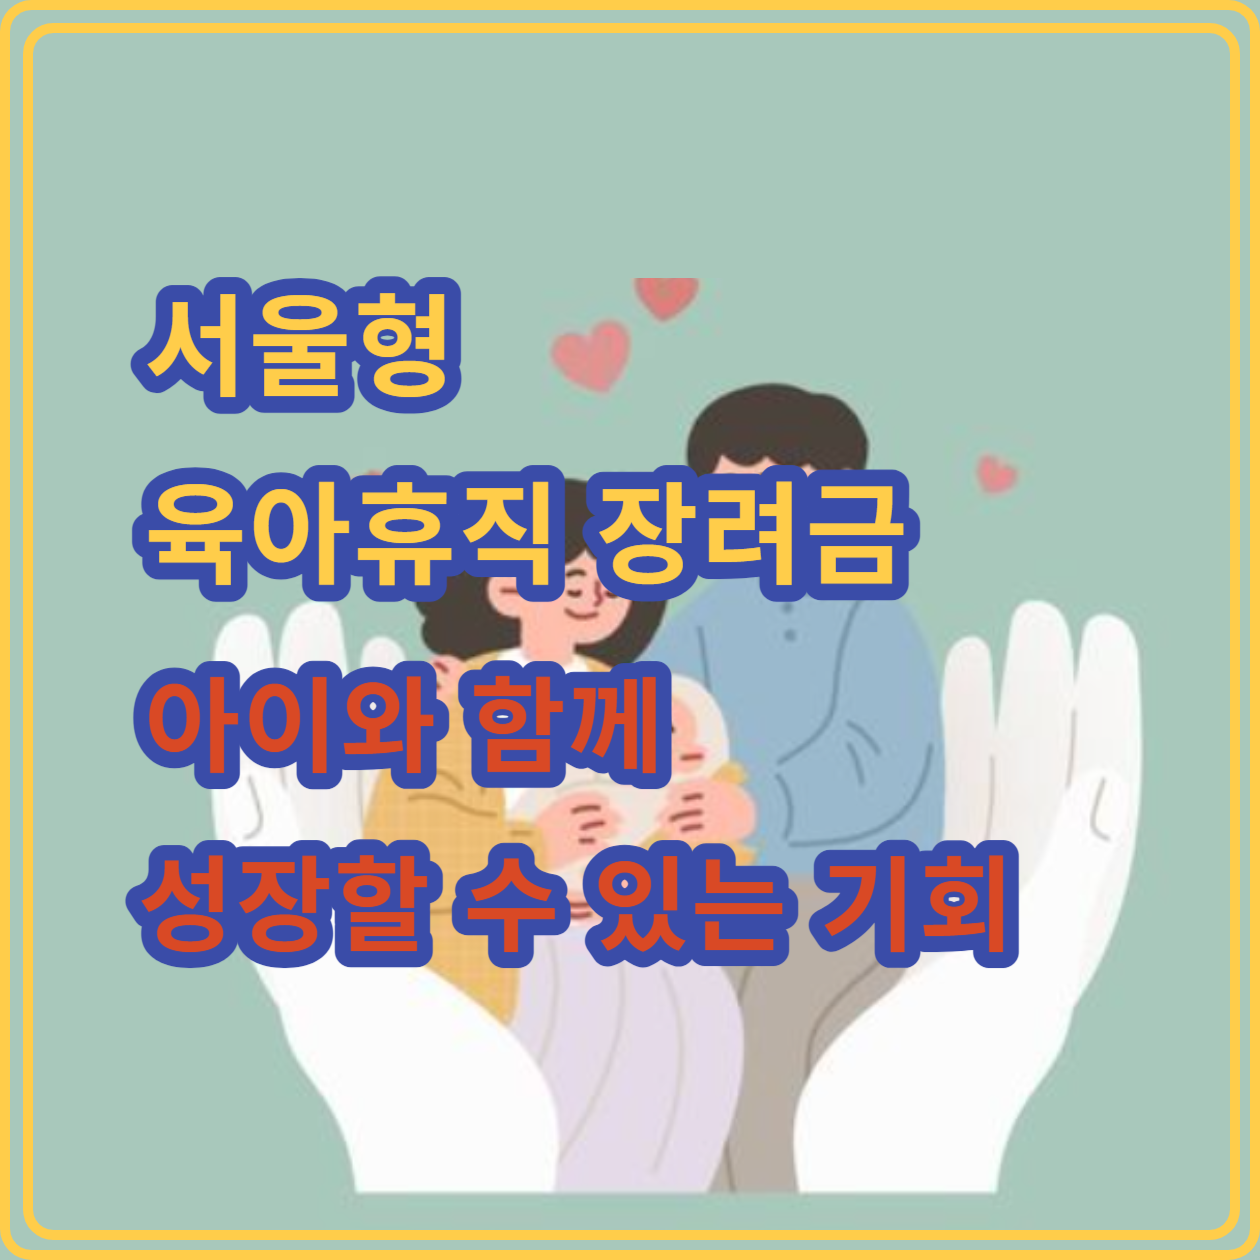 서울시 육아휴직 장려금: 아이와 함께 성장할 수 있는 기회&#44; 지금 신청하세요!